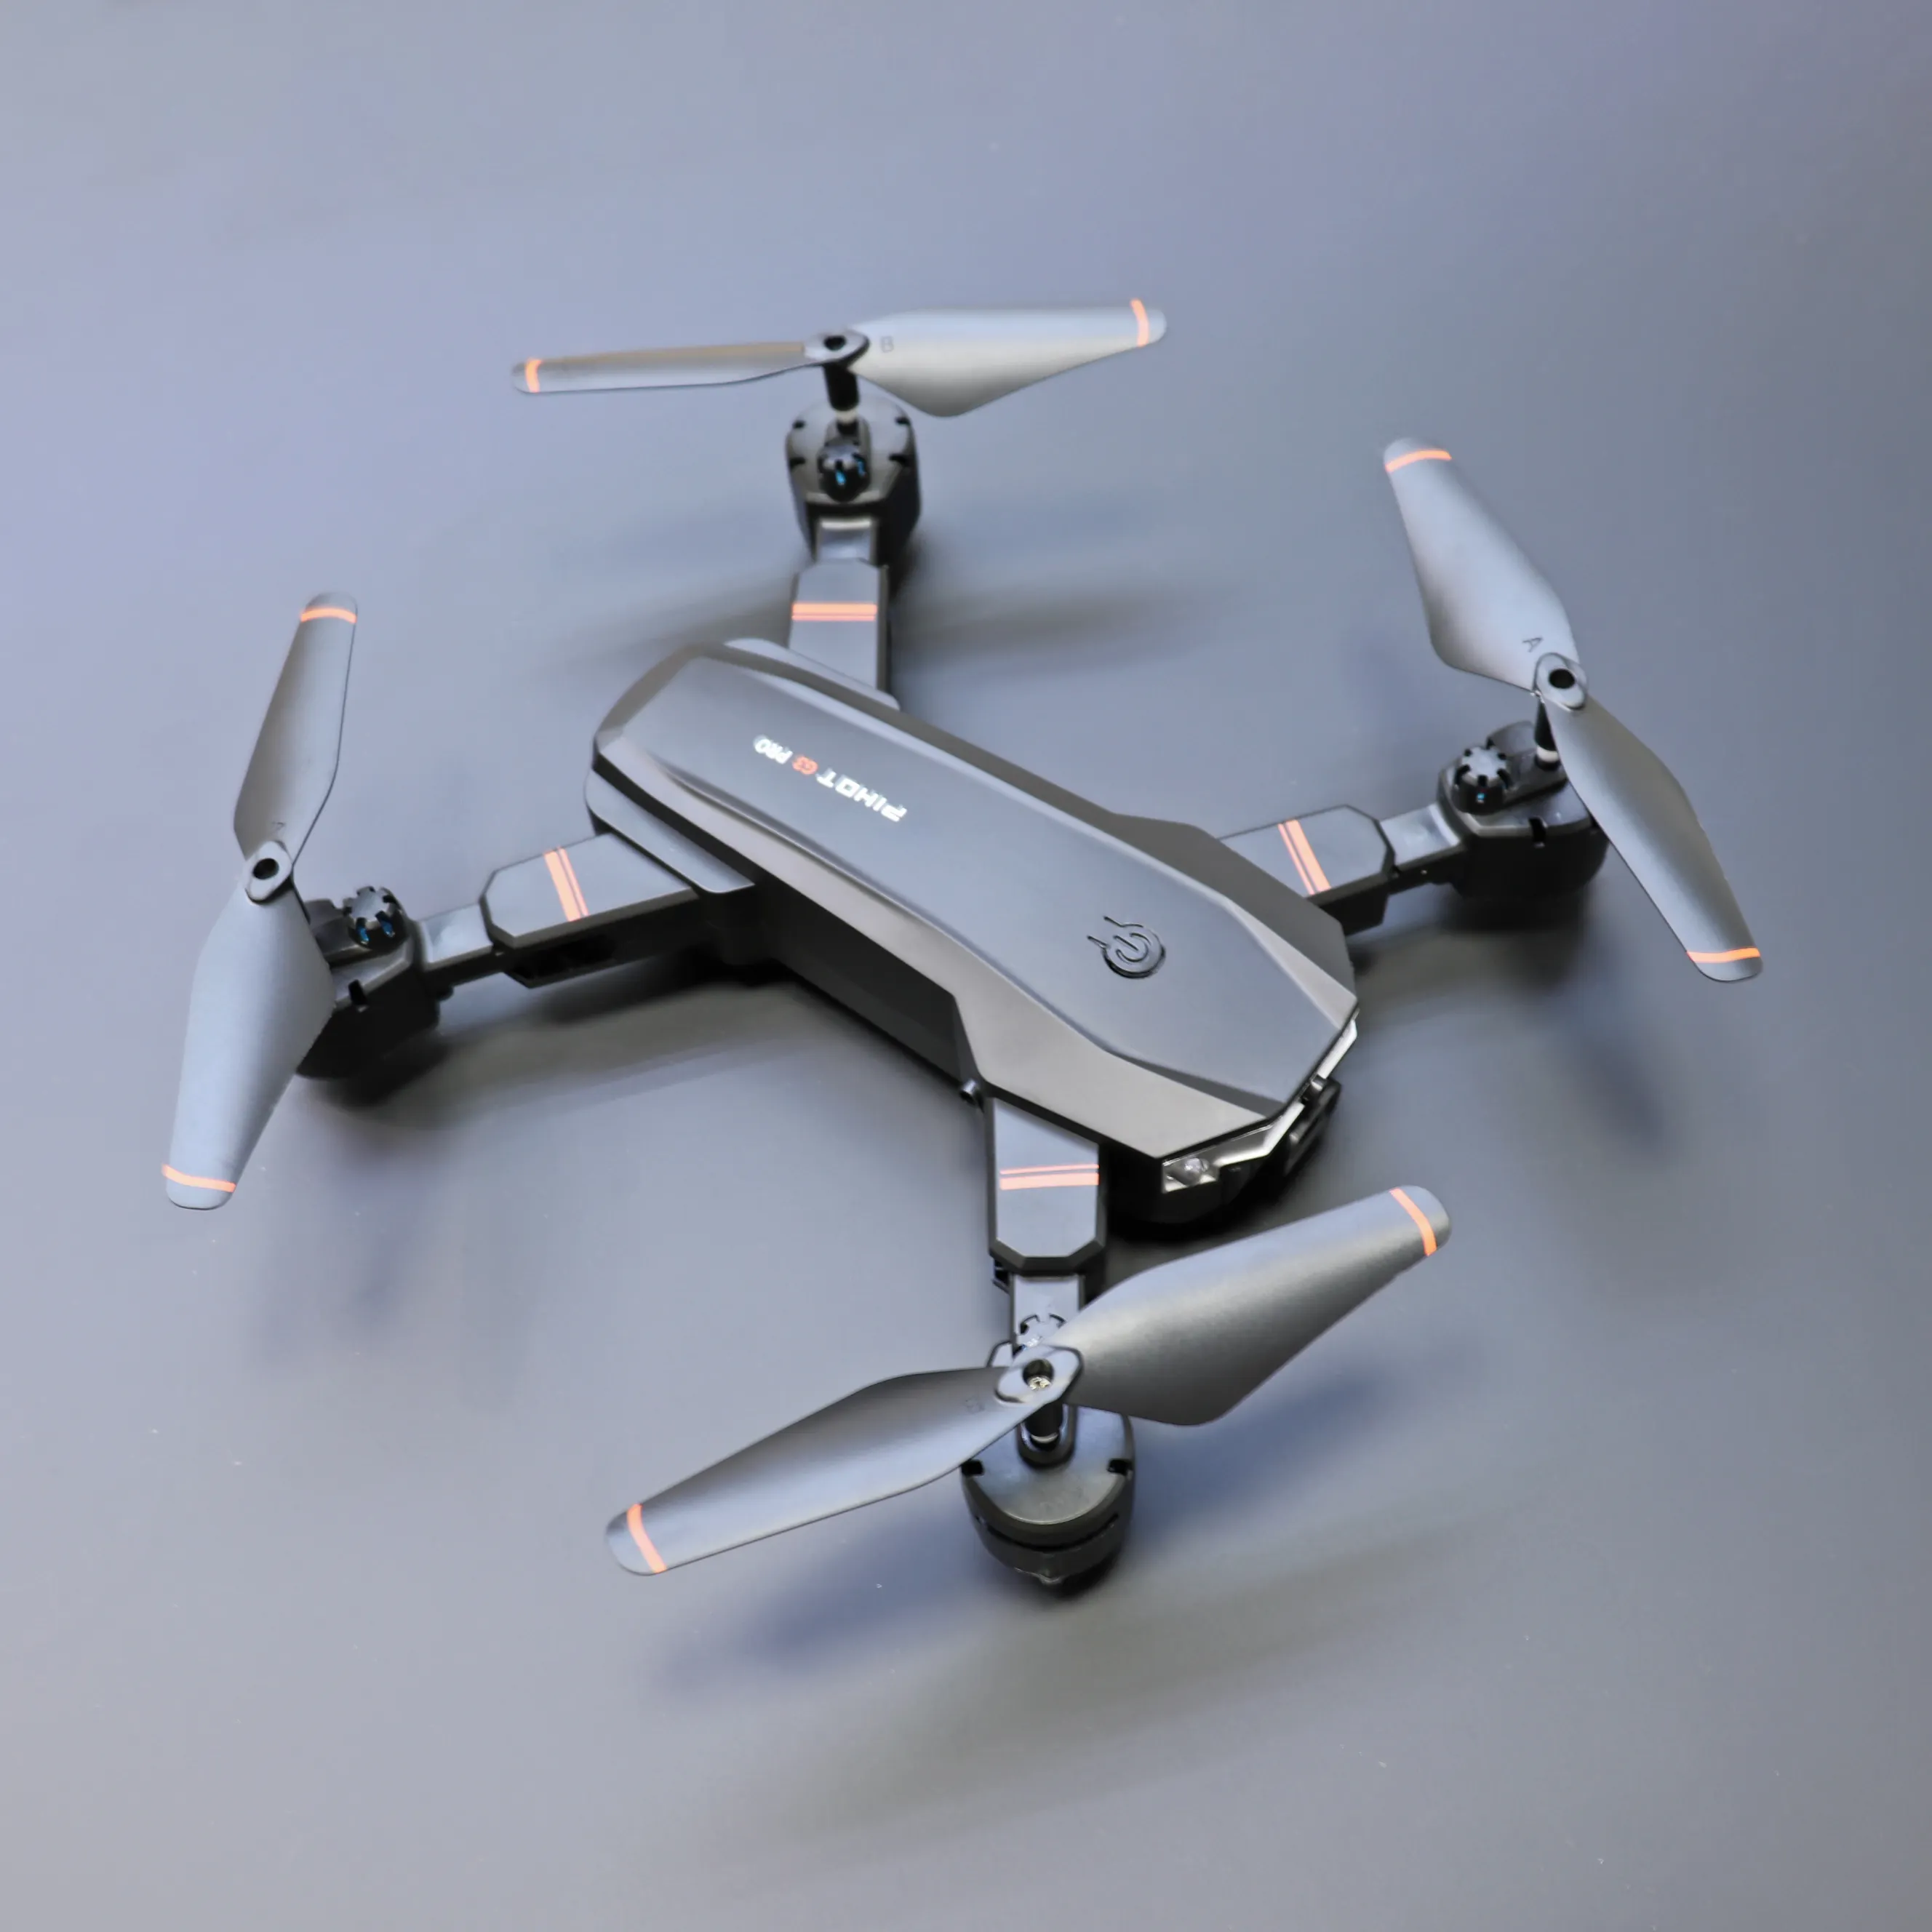 Drone Gimbal 3 sumbu 2023 Gps, pesawat nirawak balap ukuran kecil dengan kamera Fpv Rc Quadcopter kendaraan udara tak berawak (Uav)